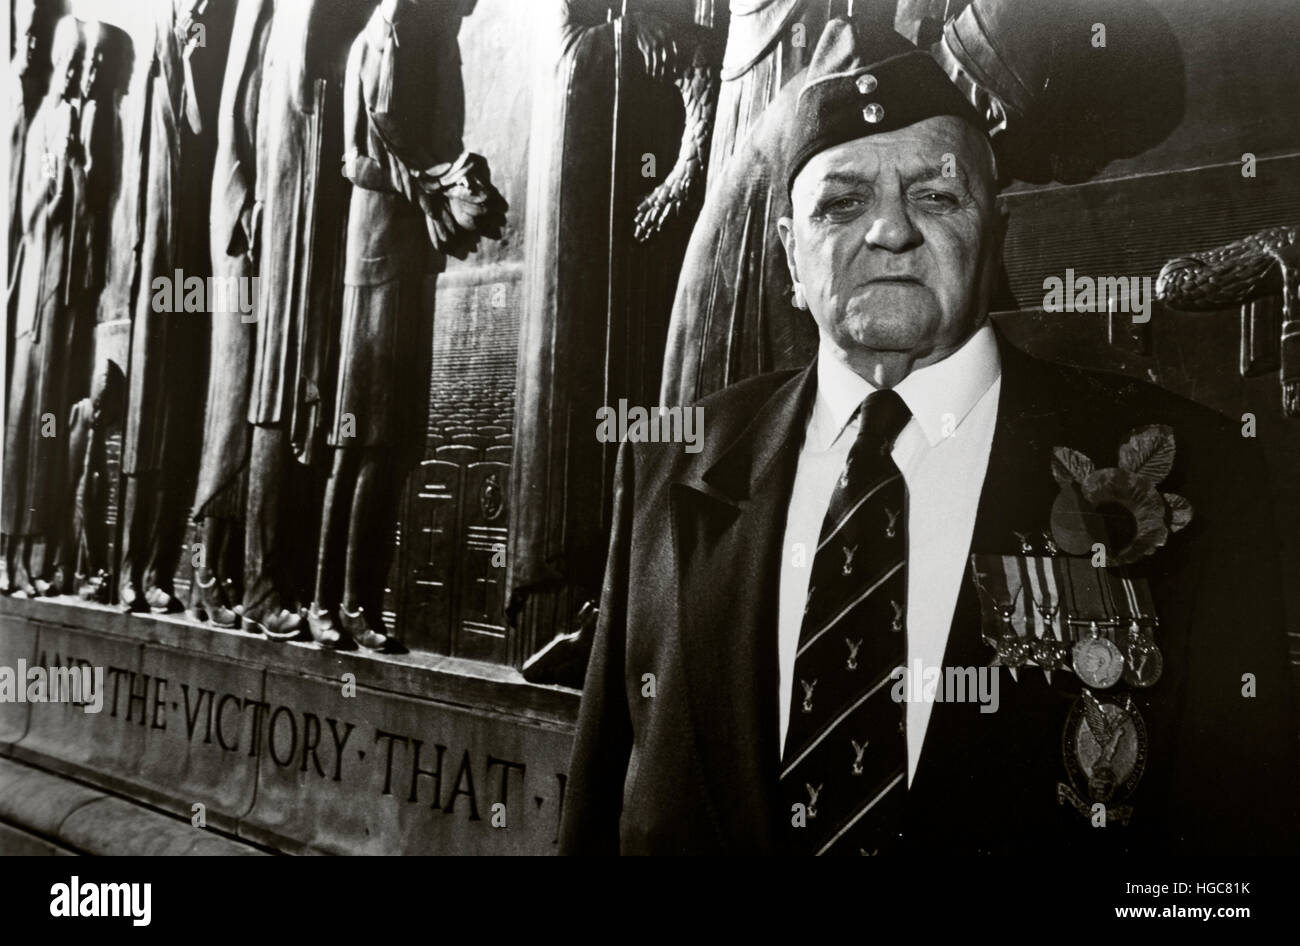 Alter Soldat aus dem Zweiten Weltkrieg am 2. World war Memorial, Liverpool, Remembrance Day 11/11, St. George's PL, Liverpool, Merseyside, England, Großbritannien, L1 1JJ Stockfoto